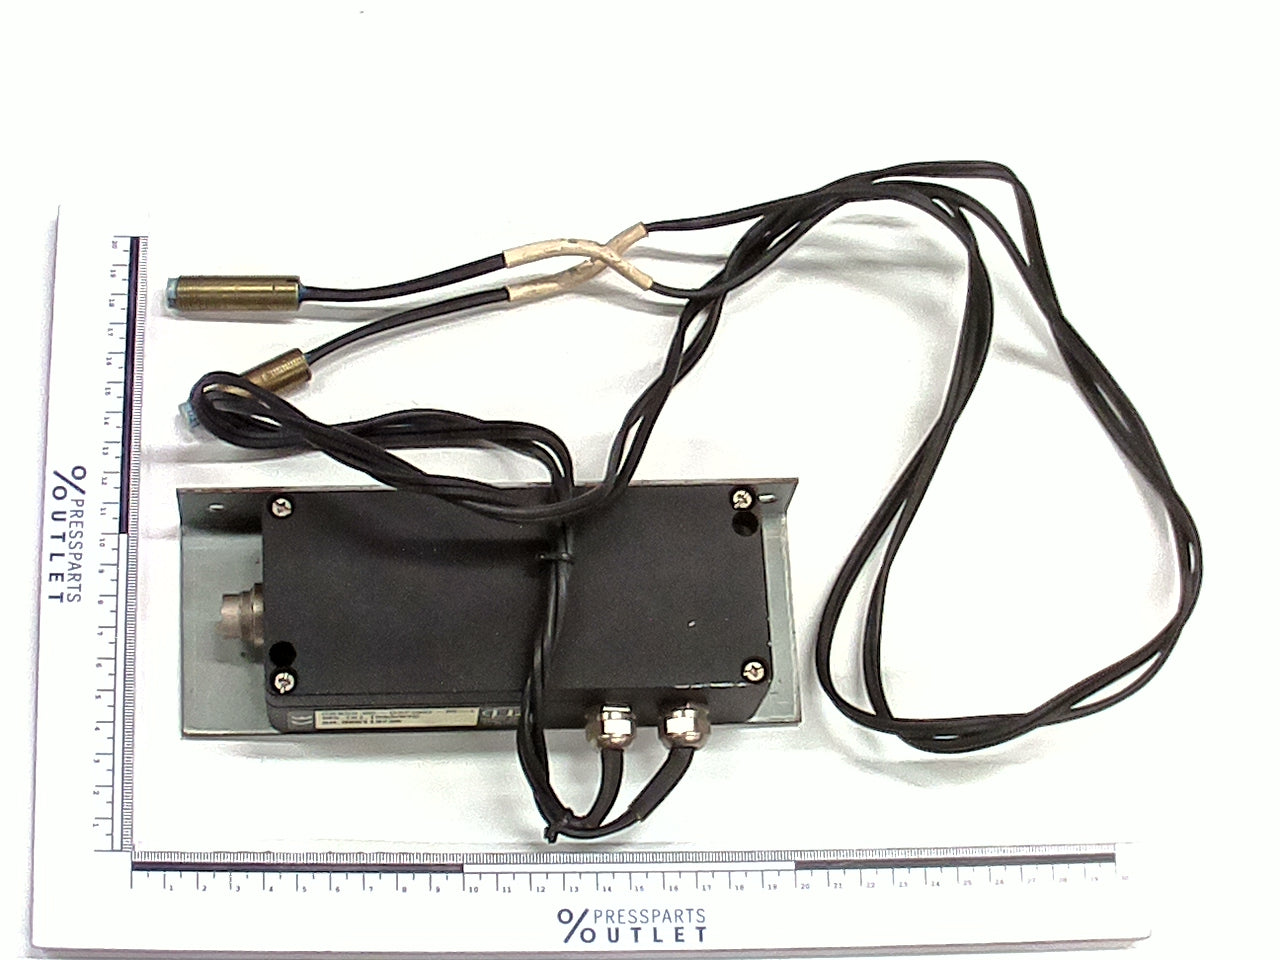 Sensor INDUC MEAS PROX - M2.161.1533/01 - Sensor INDUC MEAS PROX